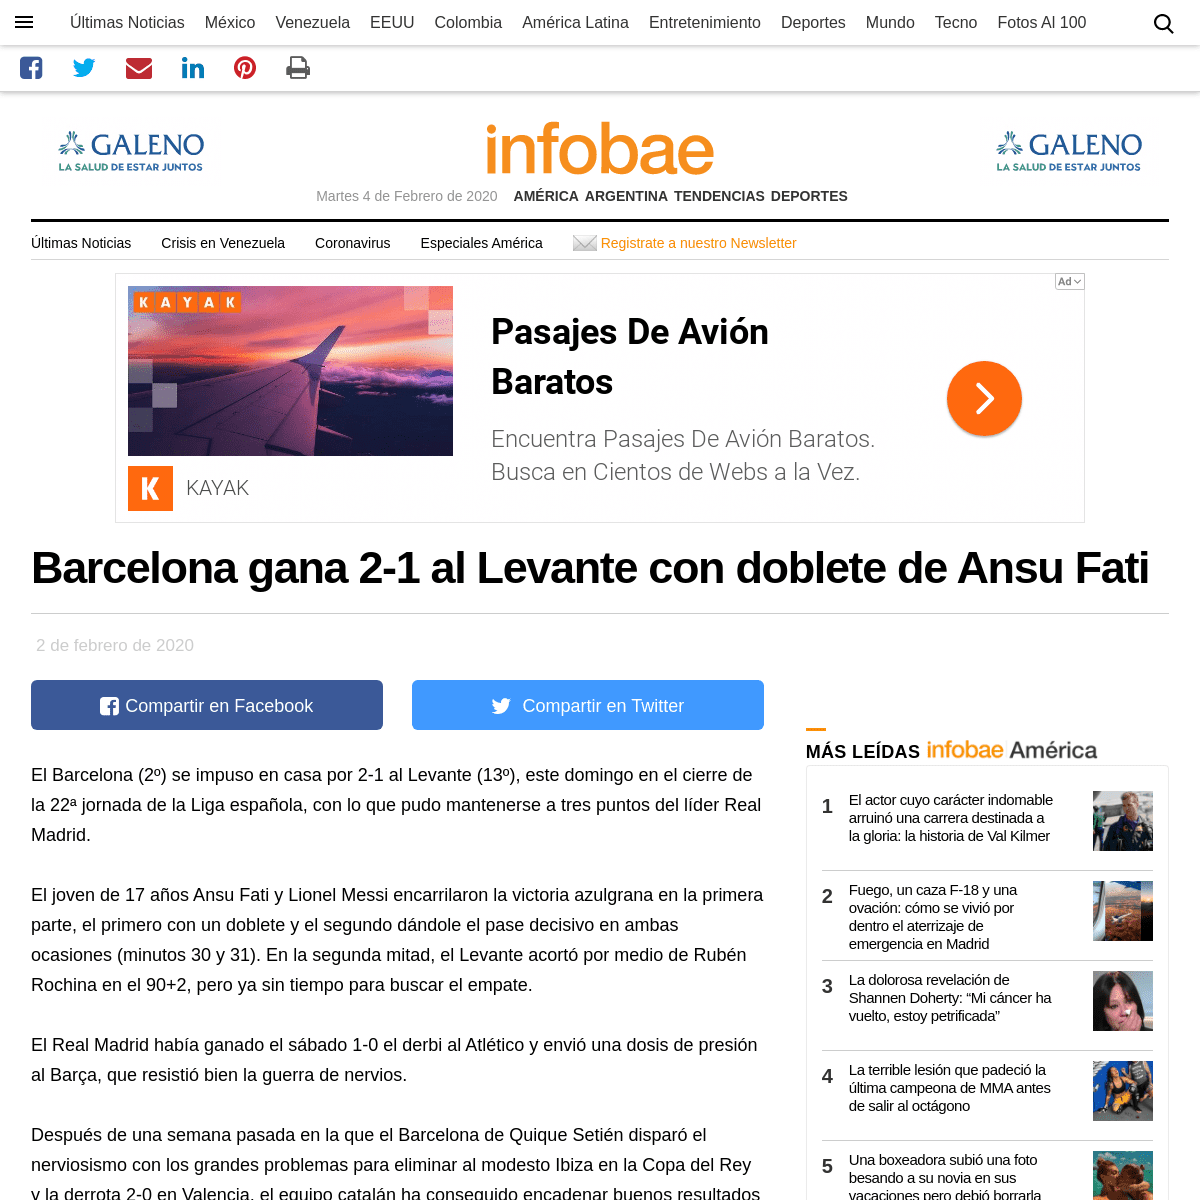 A complete backup of www.infobae.com/america/agencias/2020/02/02/barcelona-gana-2-1-al-levante-con-doblete-de-ansu-fati/